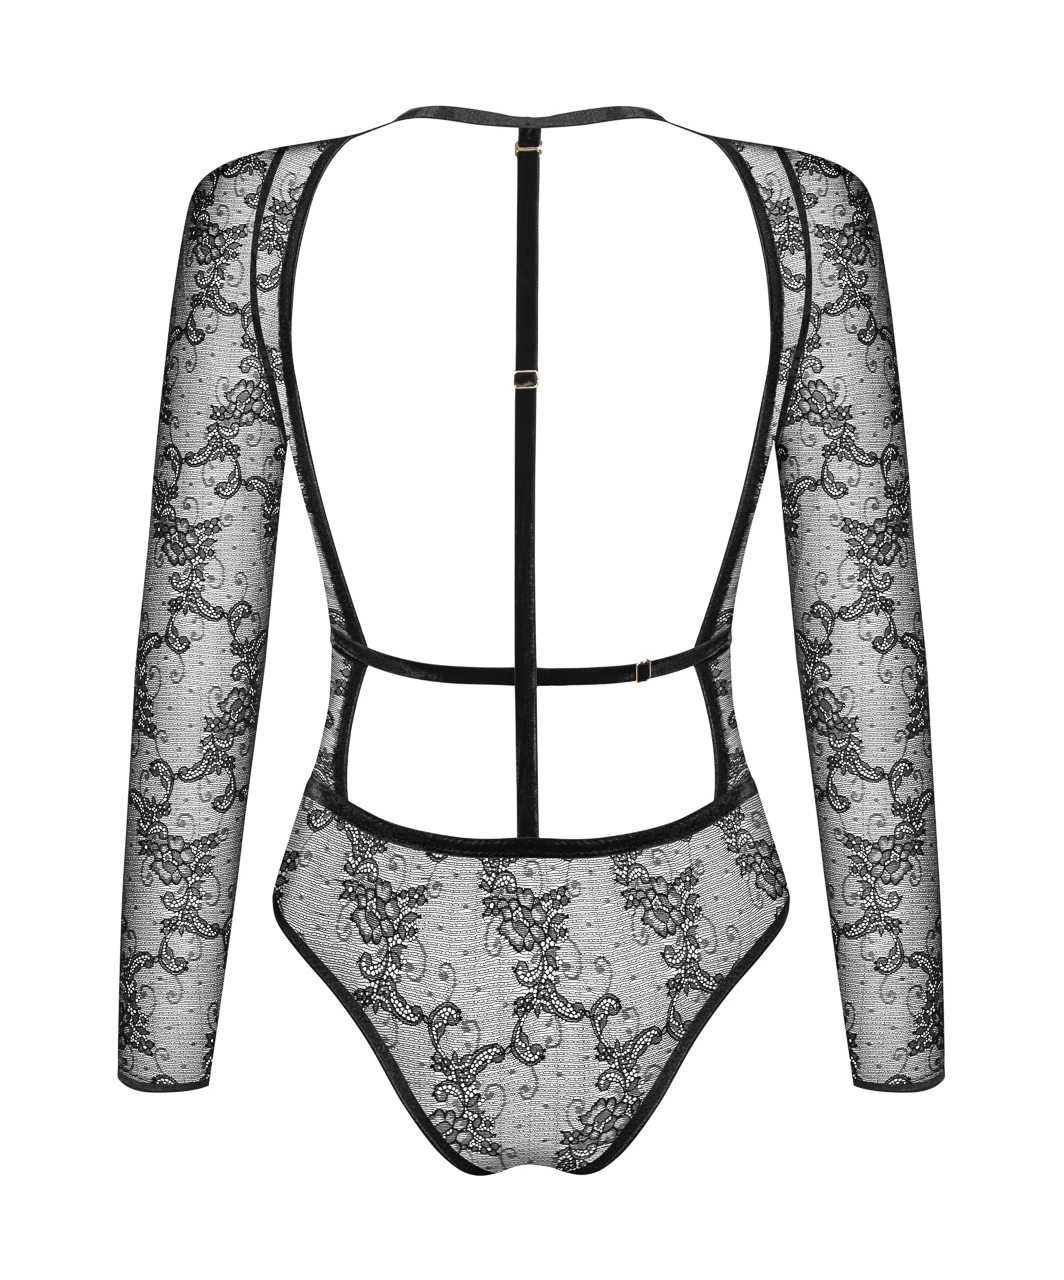 Noir Handmade black lace bodysuit with velvet edging